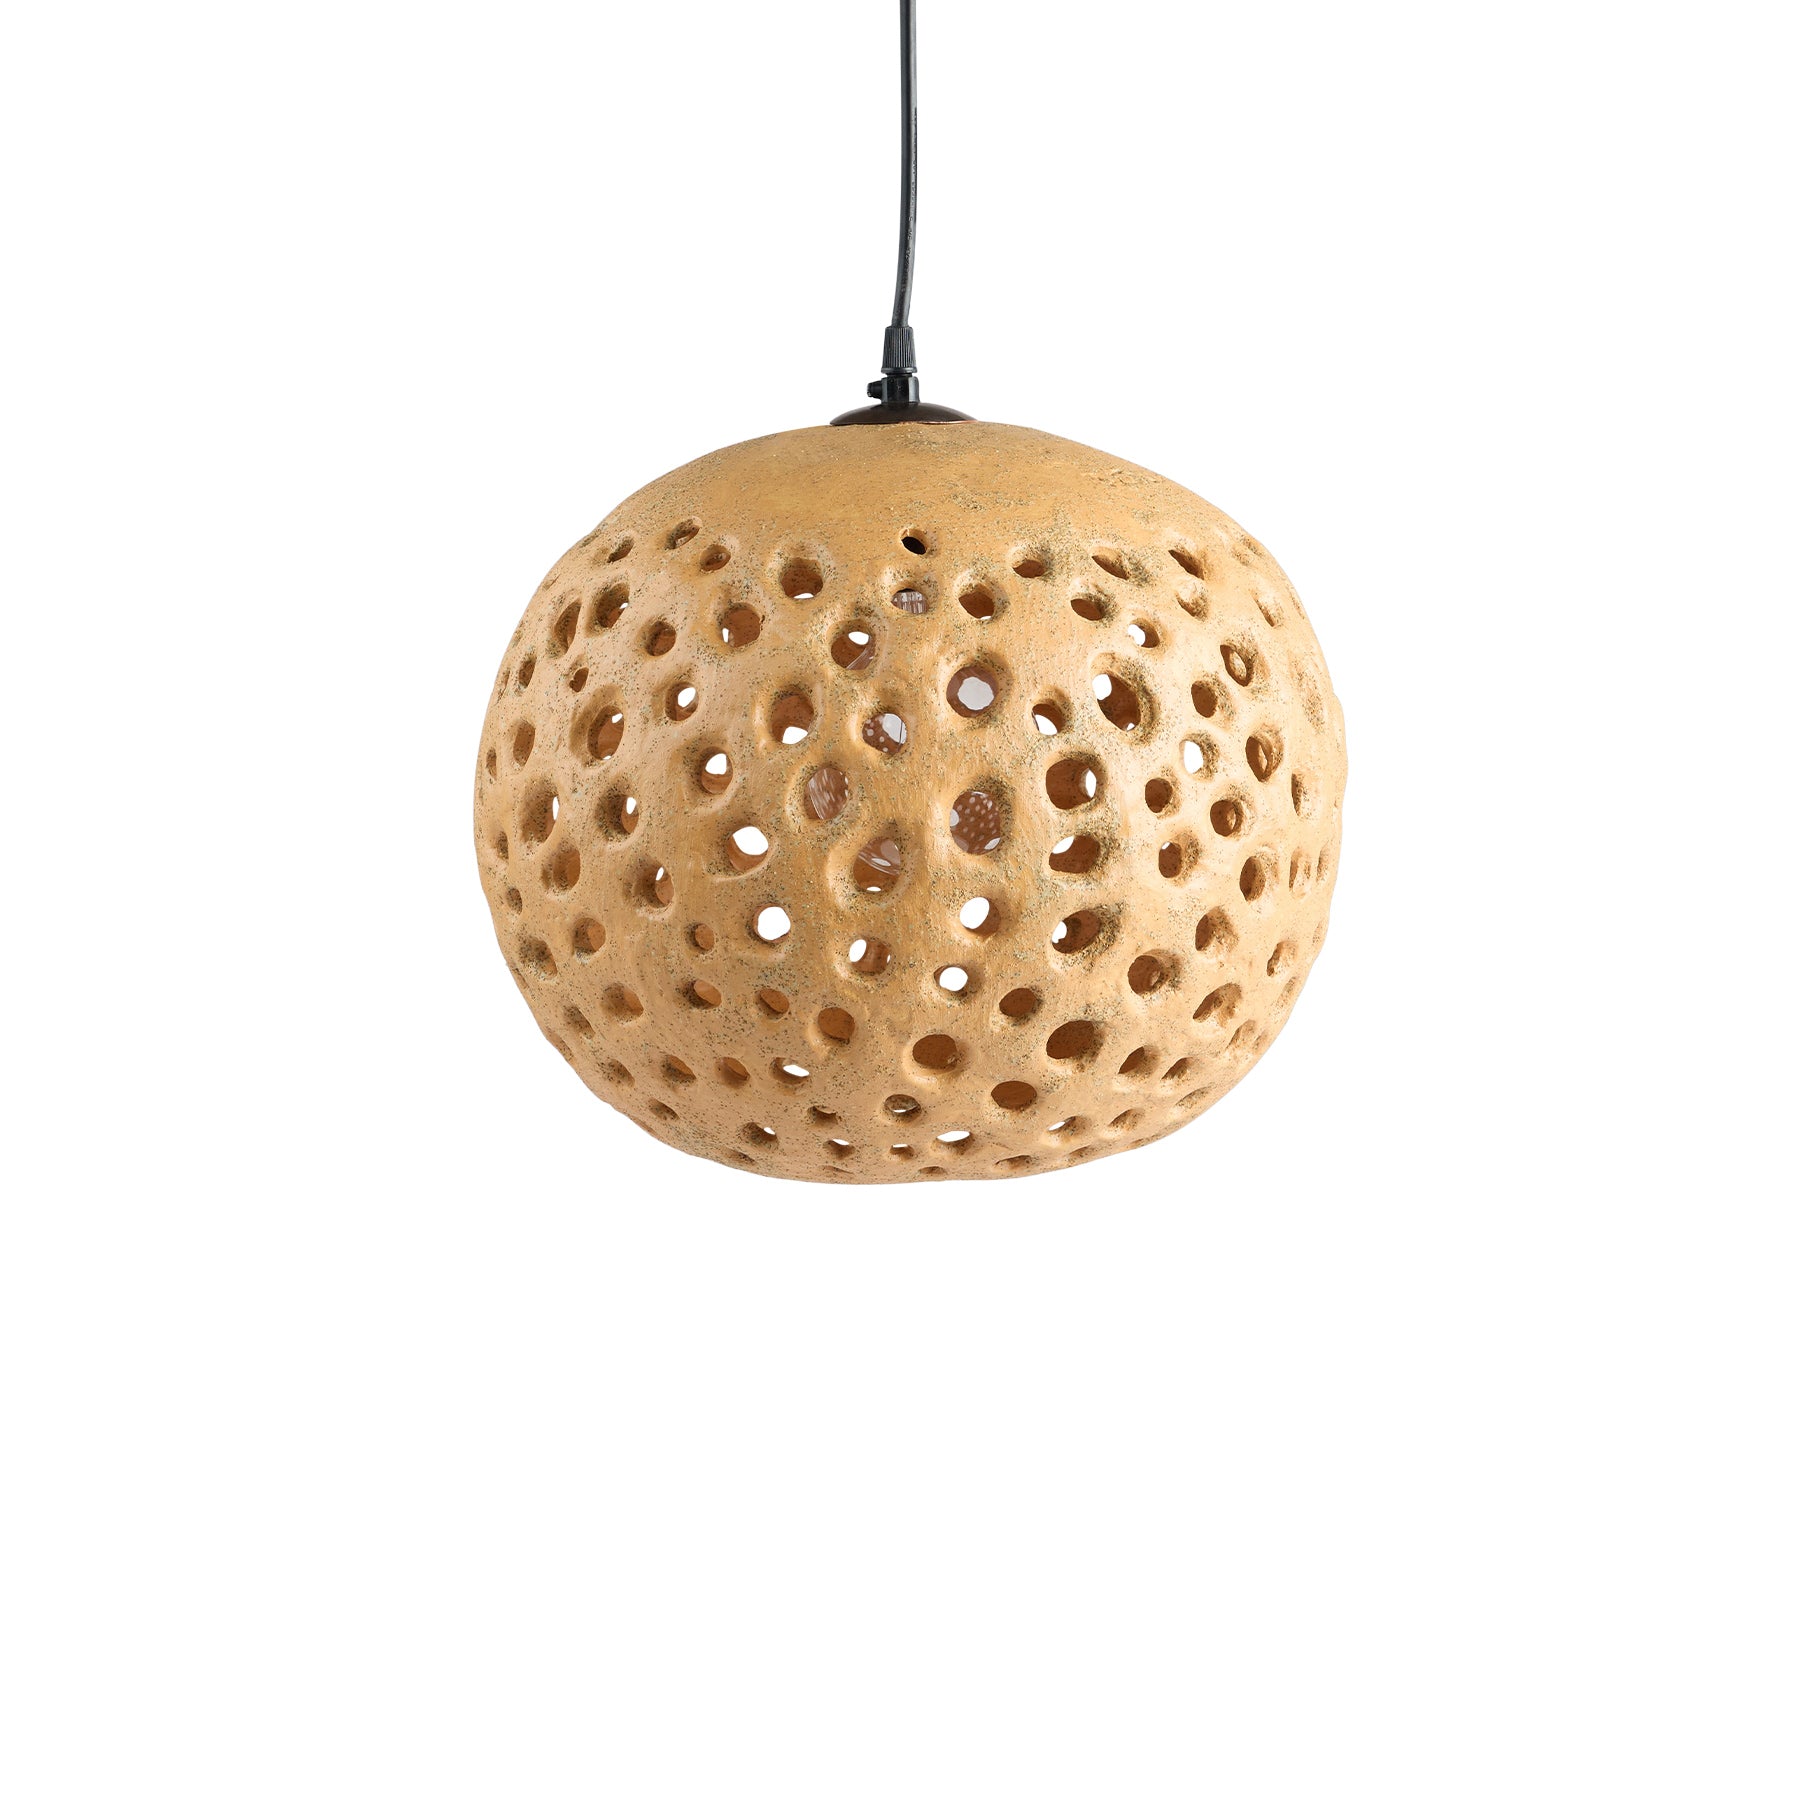 14" Ceramic Hanging Lantern in Tan Zoom Image 1